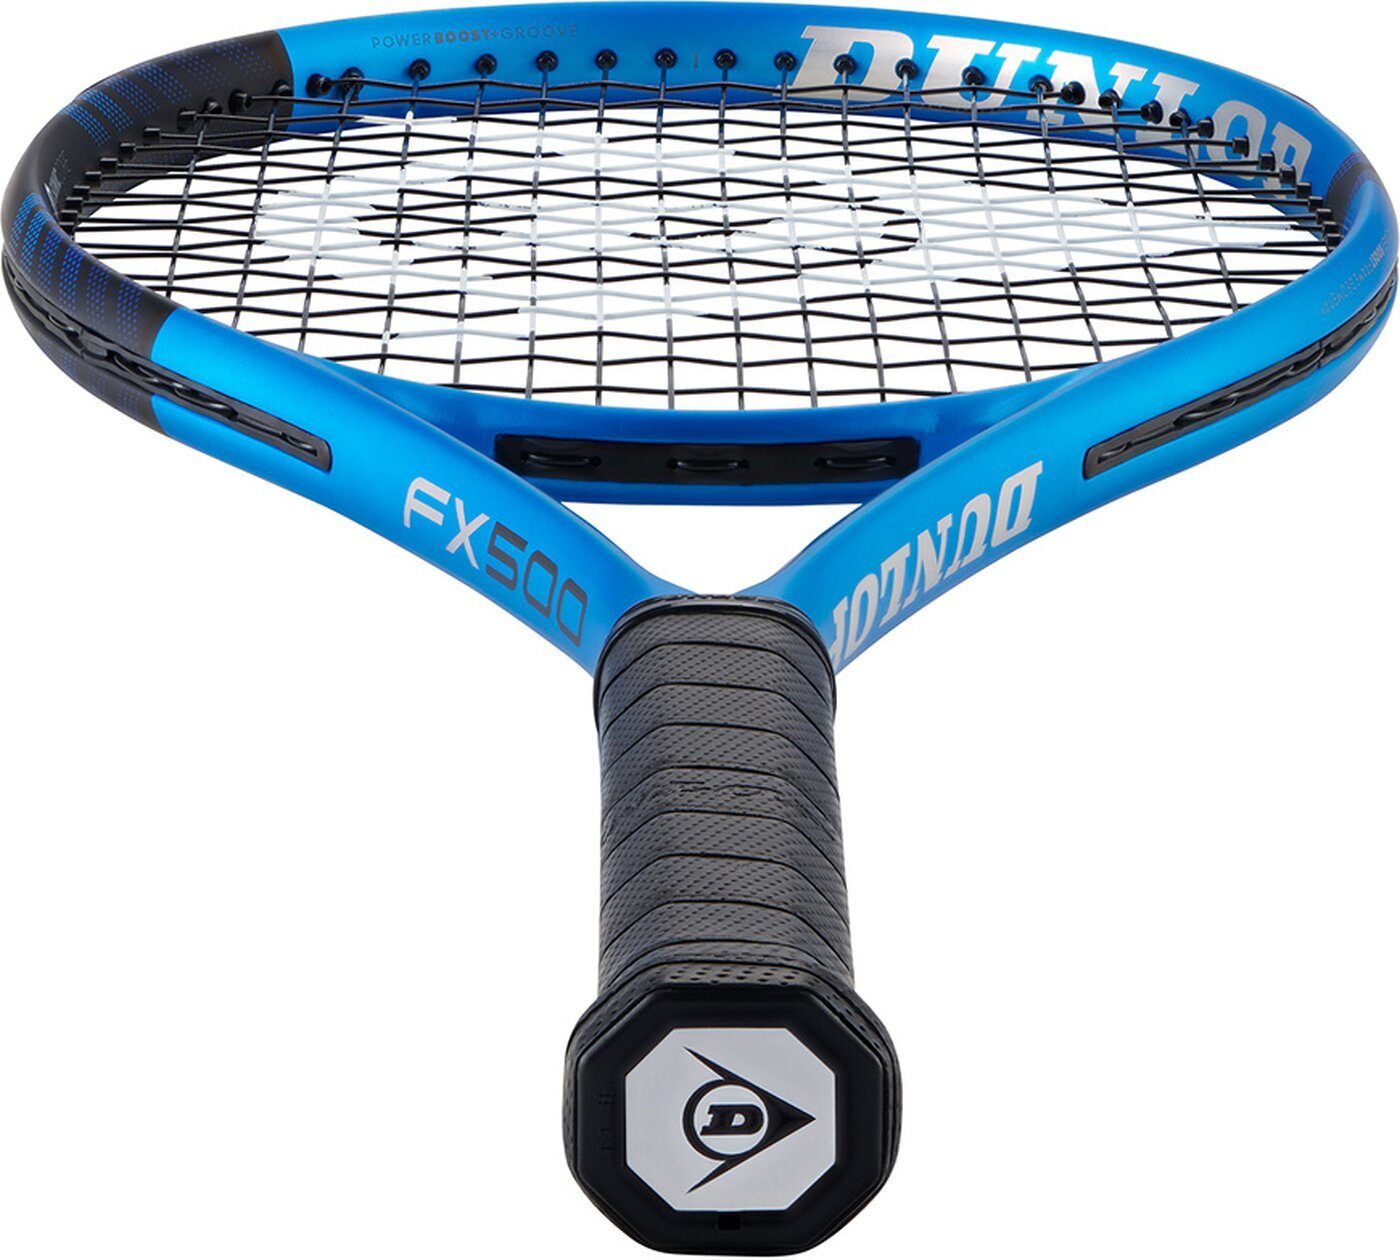 FX500 Tennisschläger BLUE/BLACK Dunlop